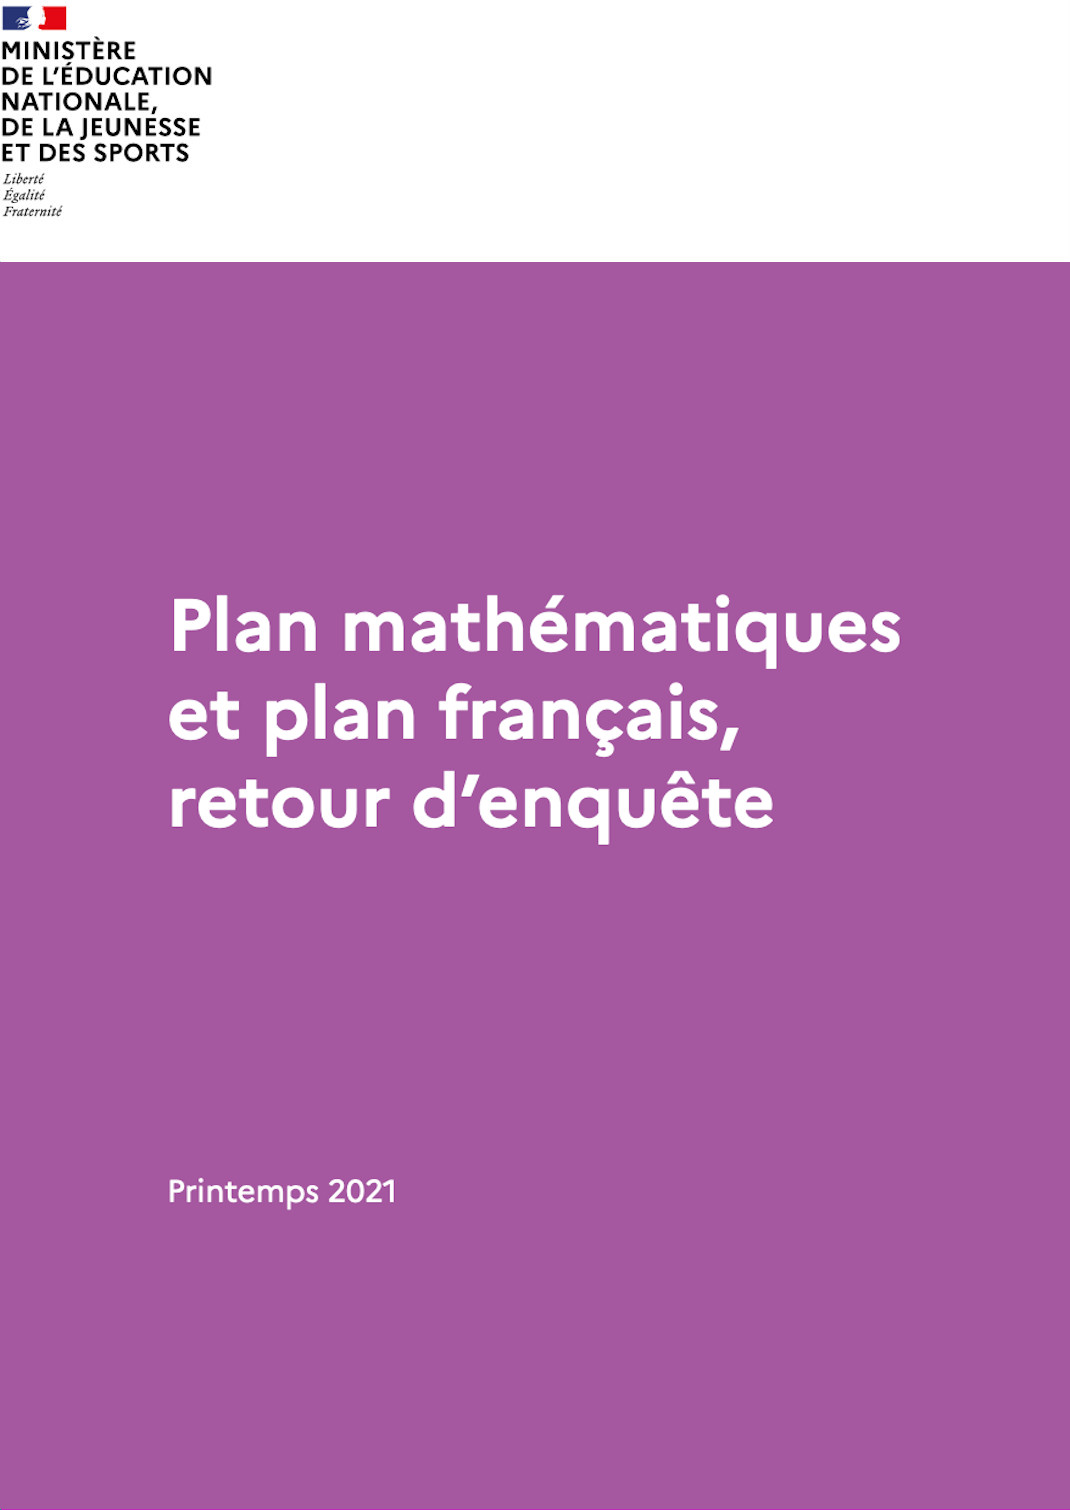 Plan mathématiques
et plan français, retour d’enquête